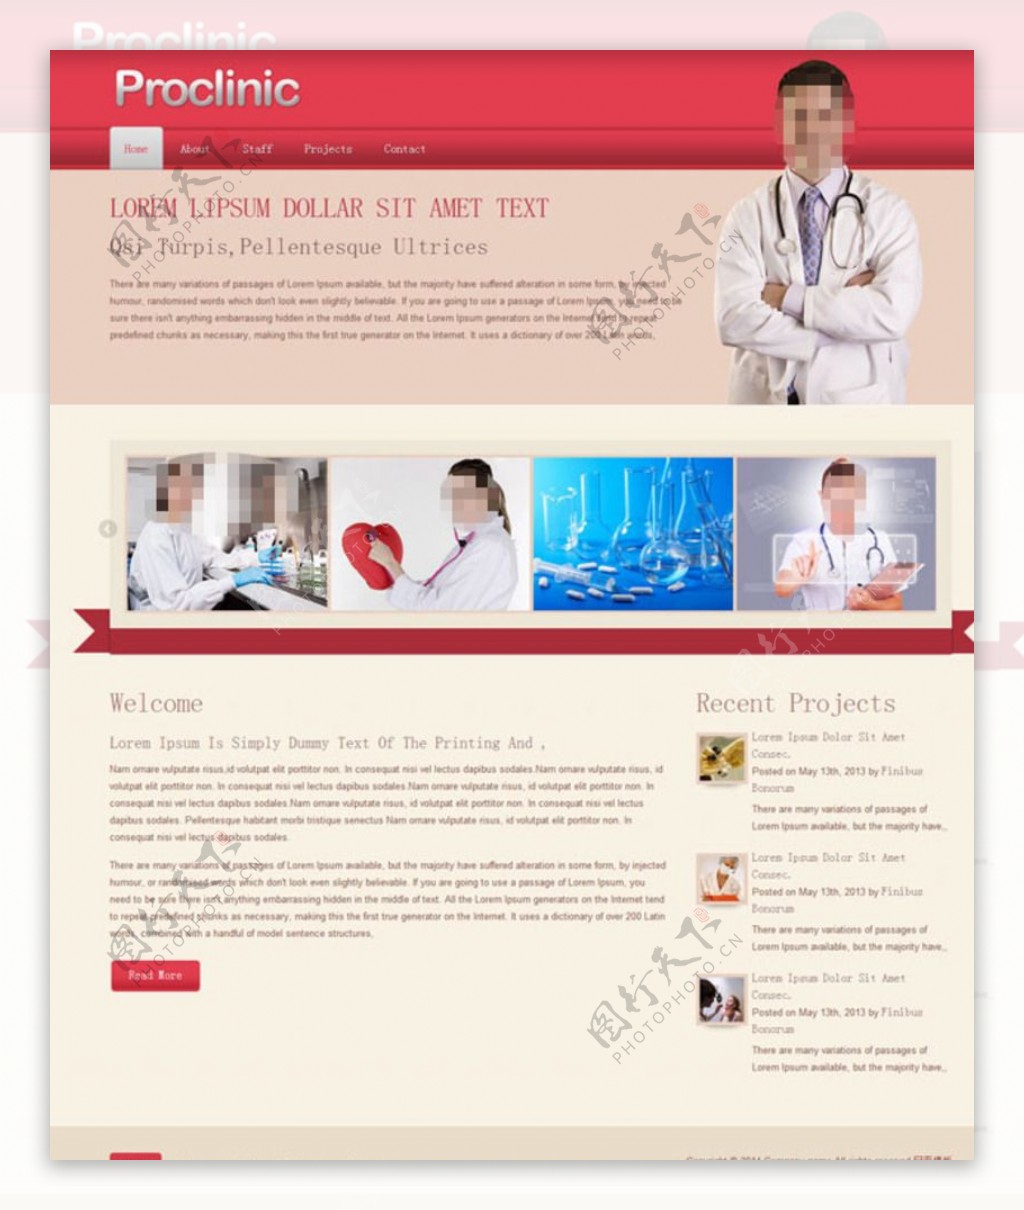 医学研究院网页模板图片